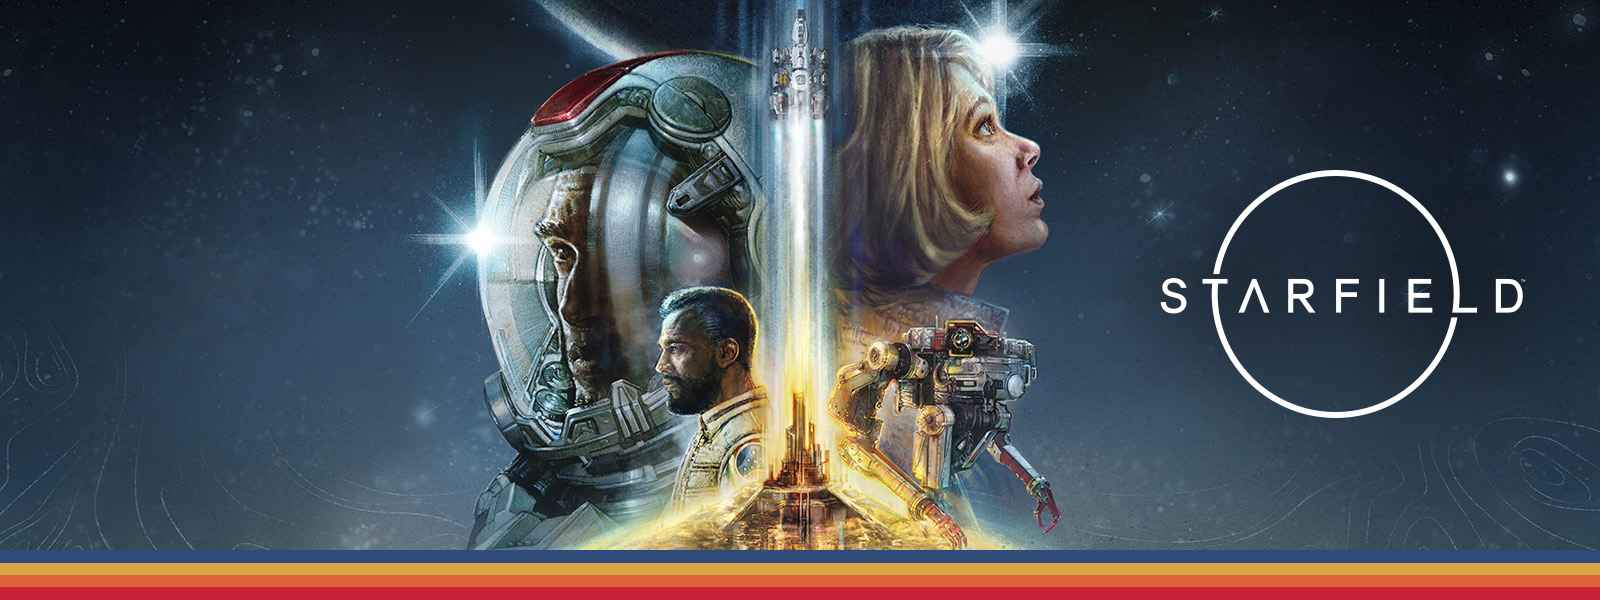 Starfield. Cuatro personajes superpuestos mirando hacia derecha e izquierda mientras un cohete despega en el medio con un fondo espacial.